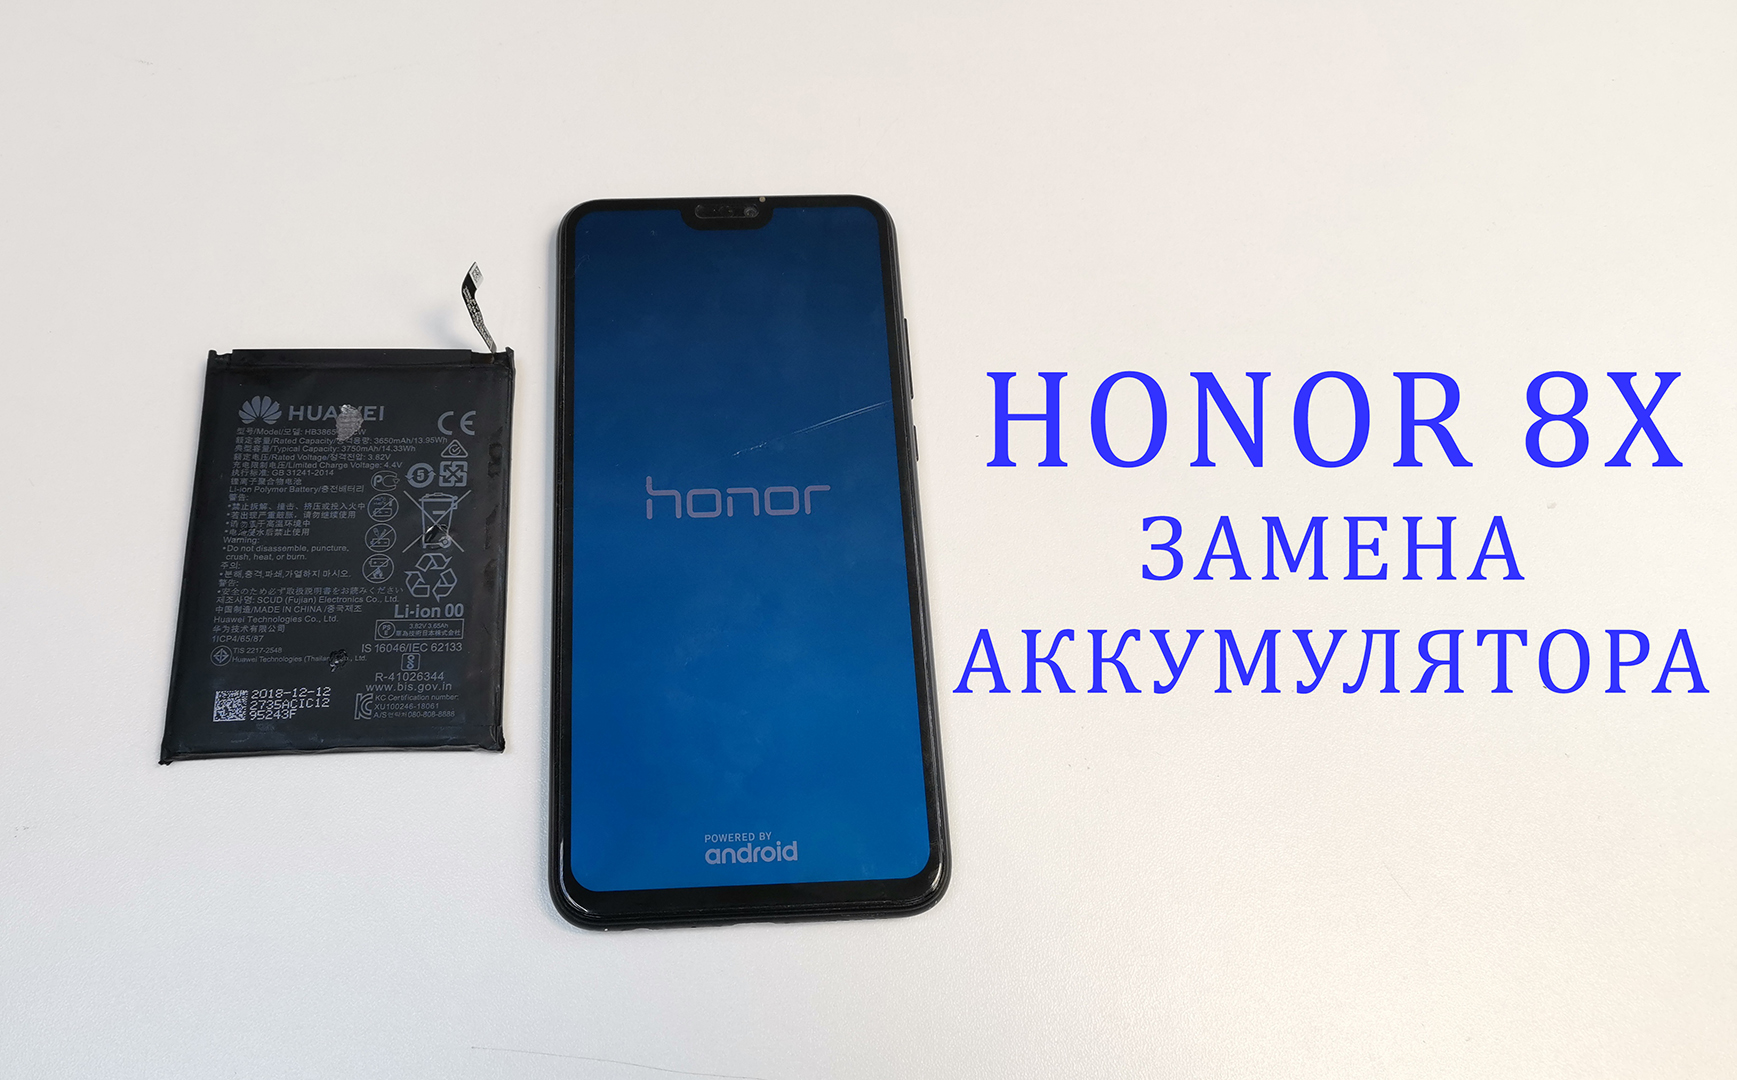 Honor 8x аккумулятор купить